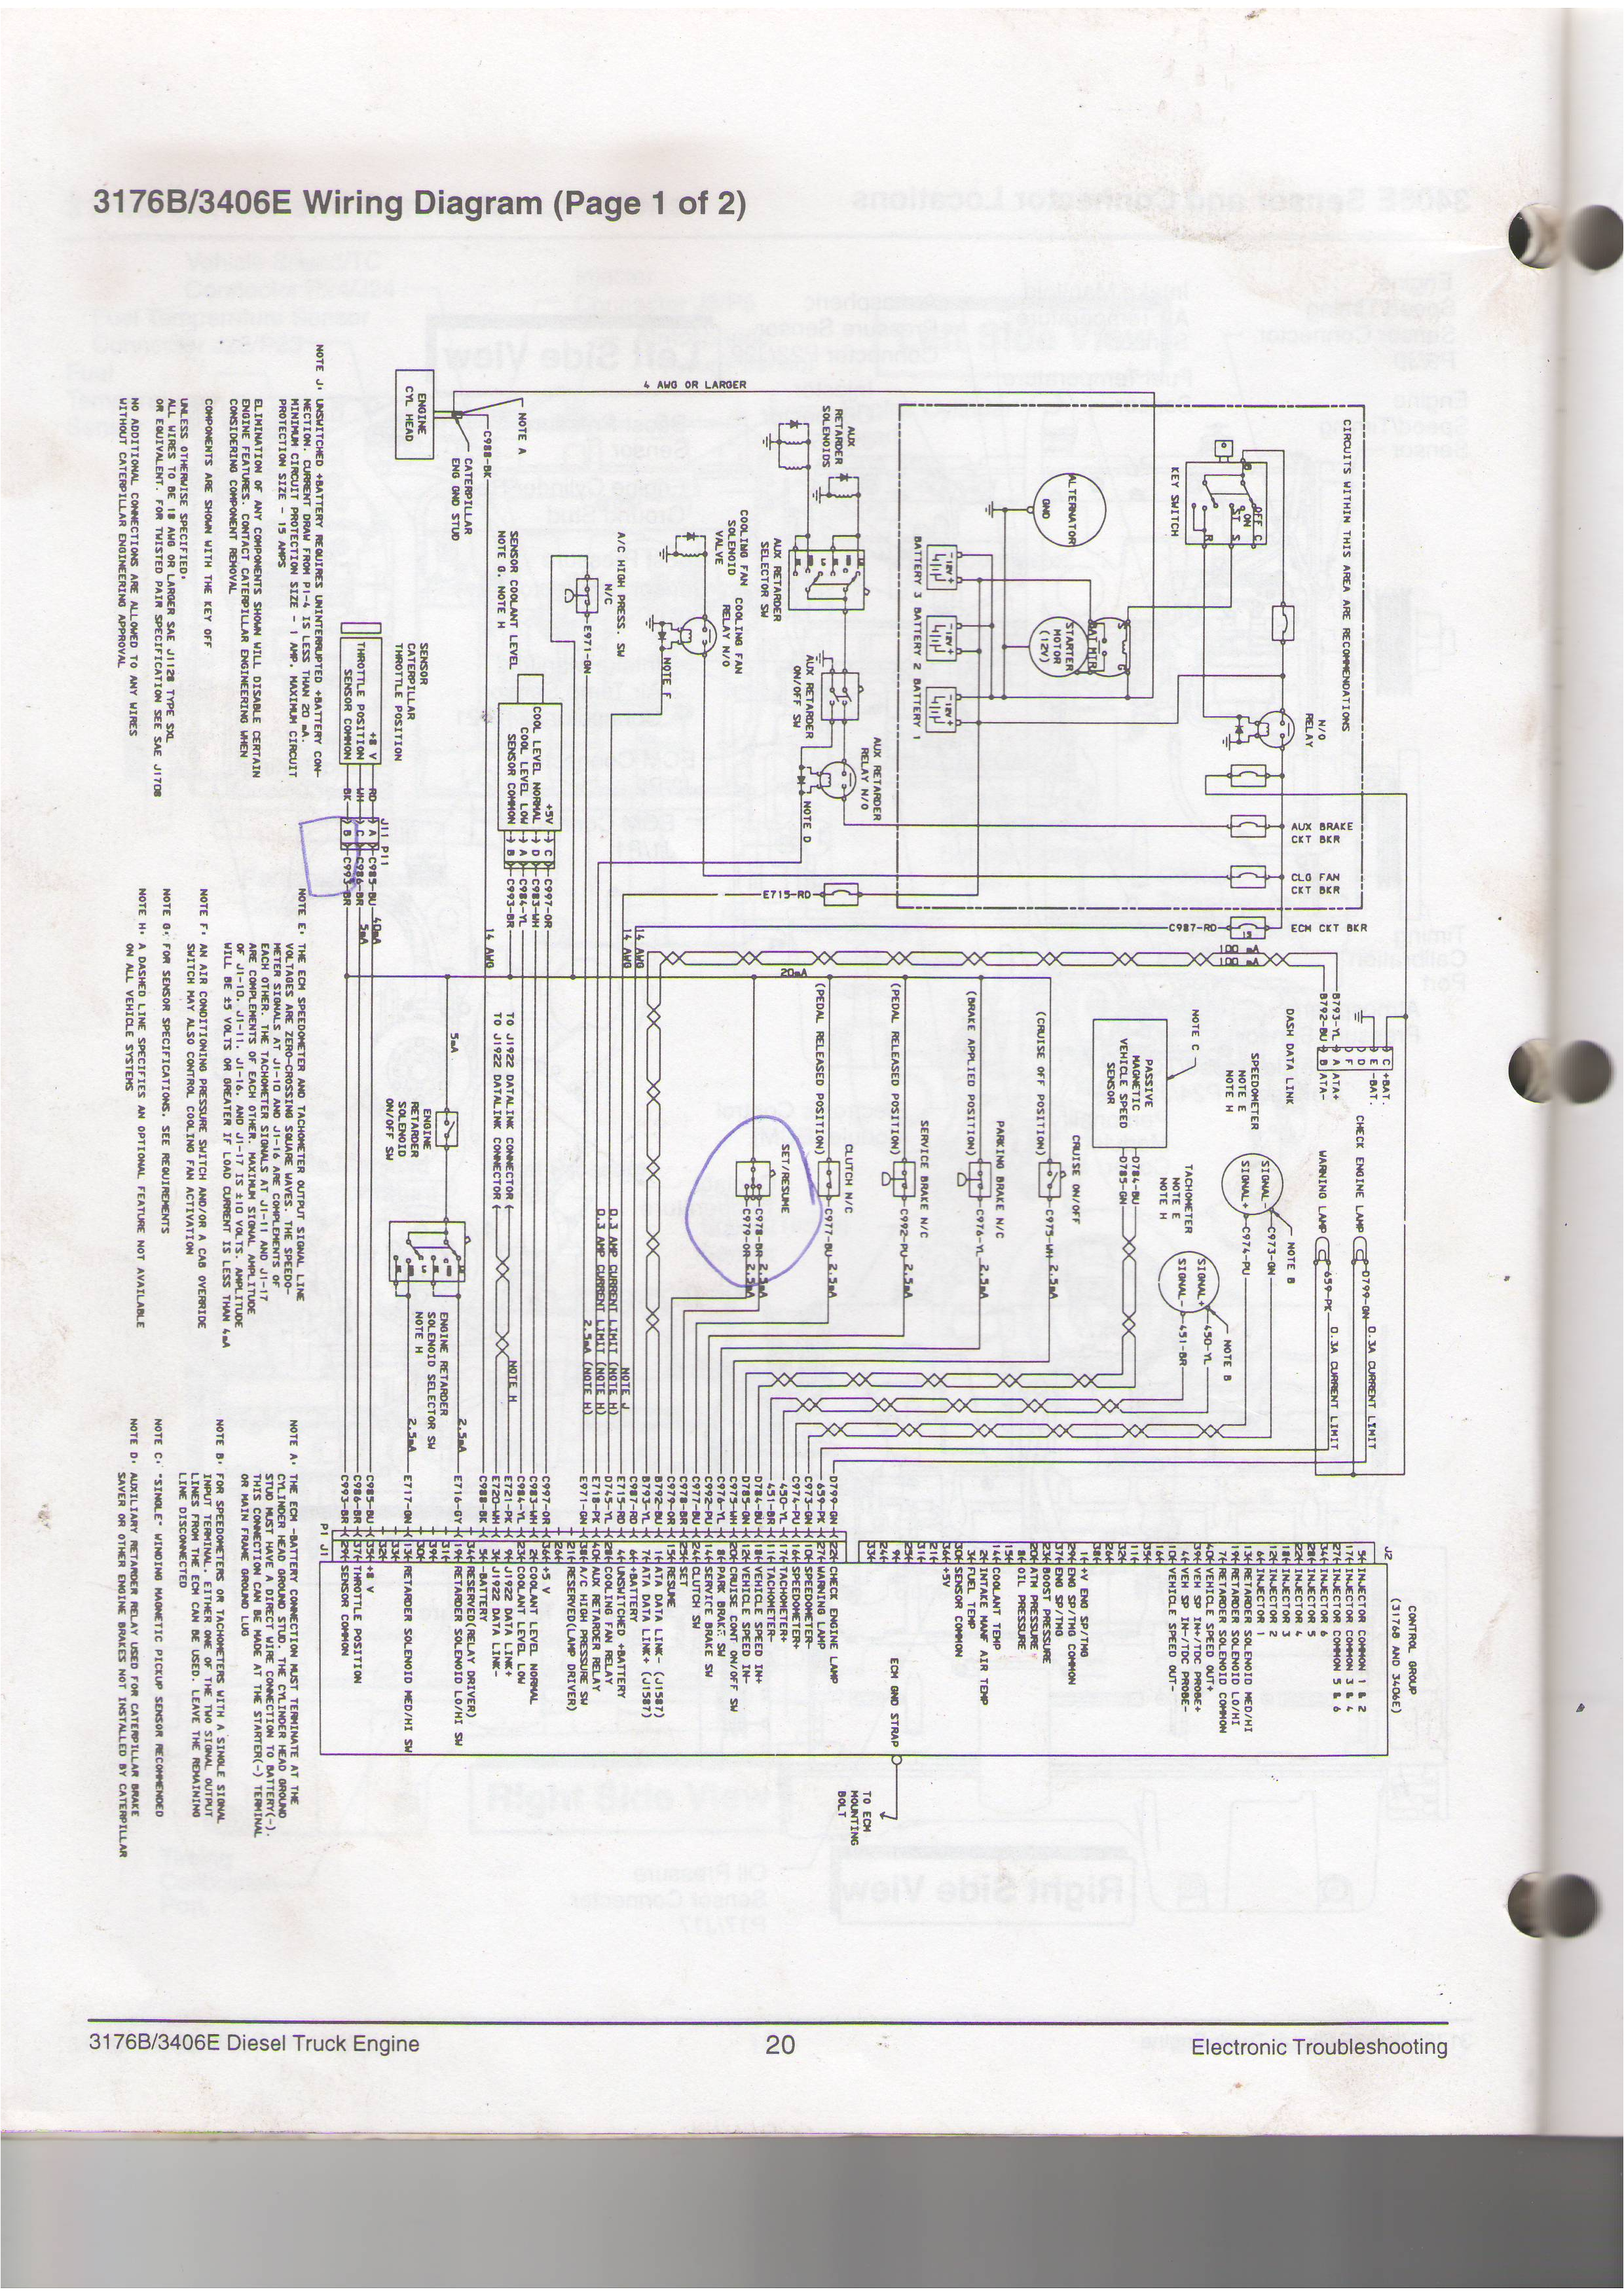 3176 cat engine diagram wiring diagram option cat 3176 wiring diagram wiring diagram inside 3176 cat